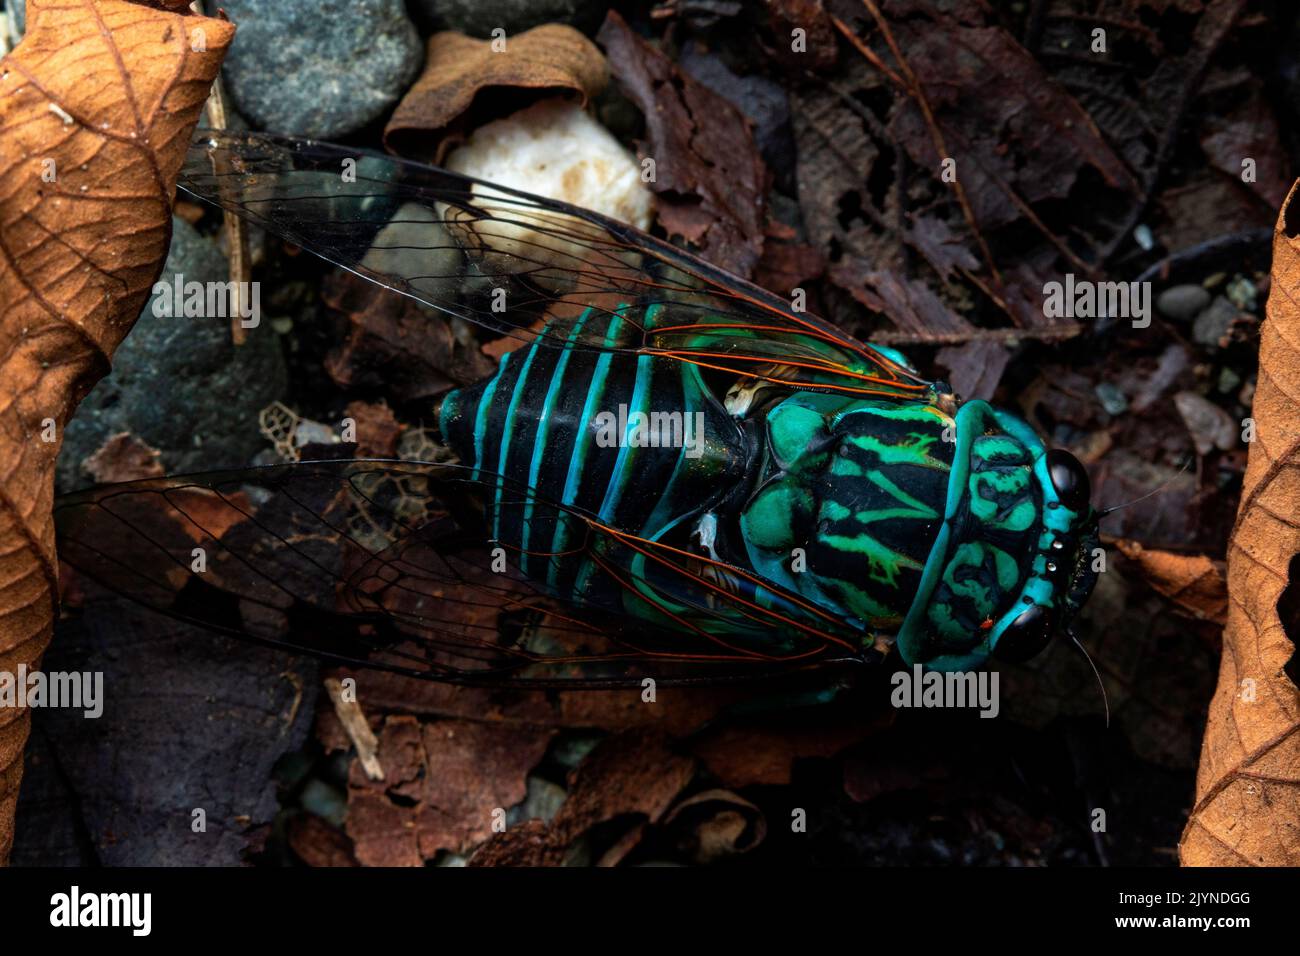 Cicada (Zammara smaragdula) in situ, Carate, Osa, Costa Rica Stock Photo